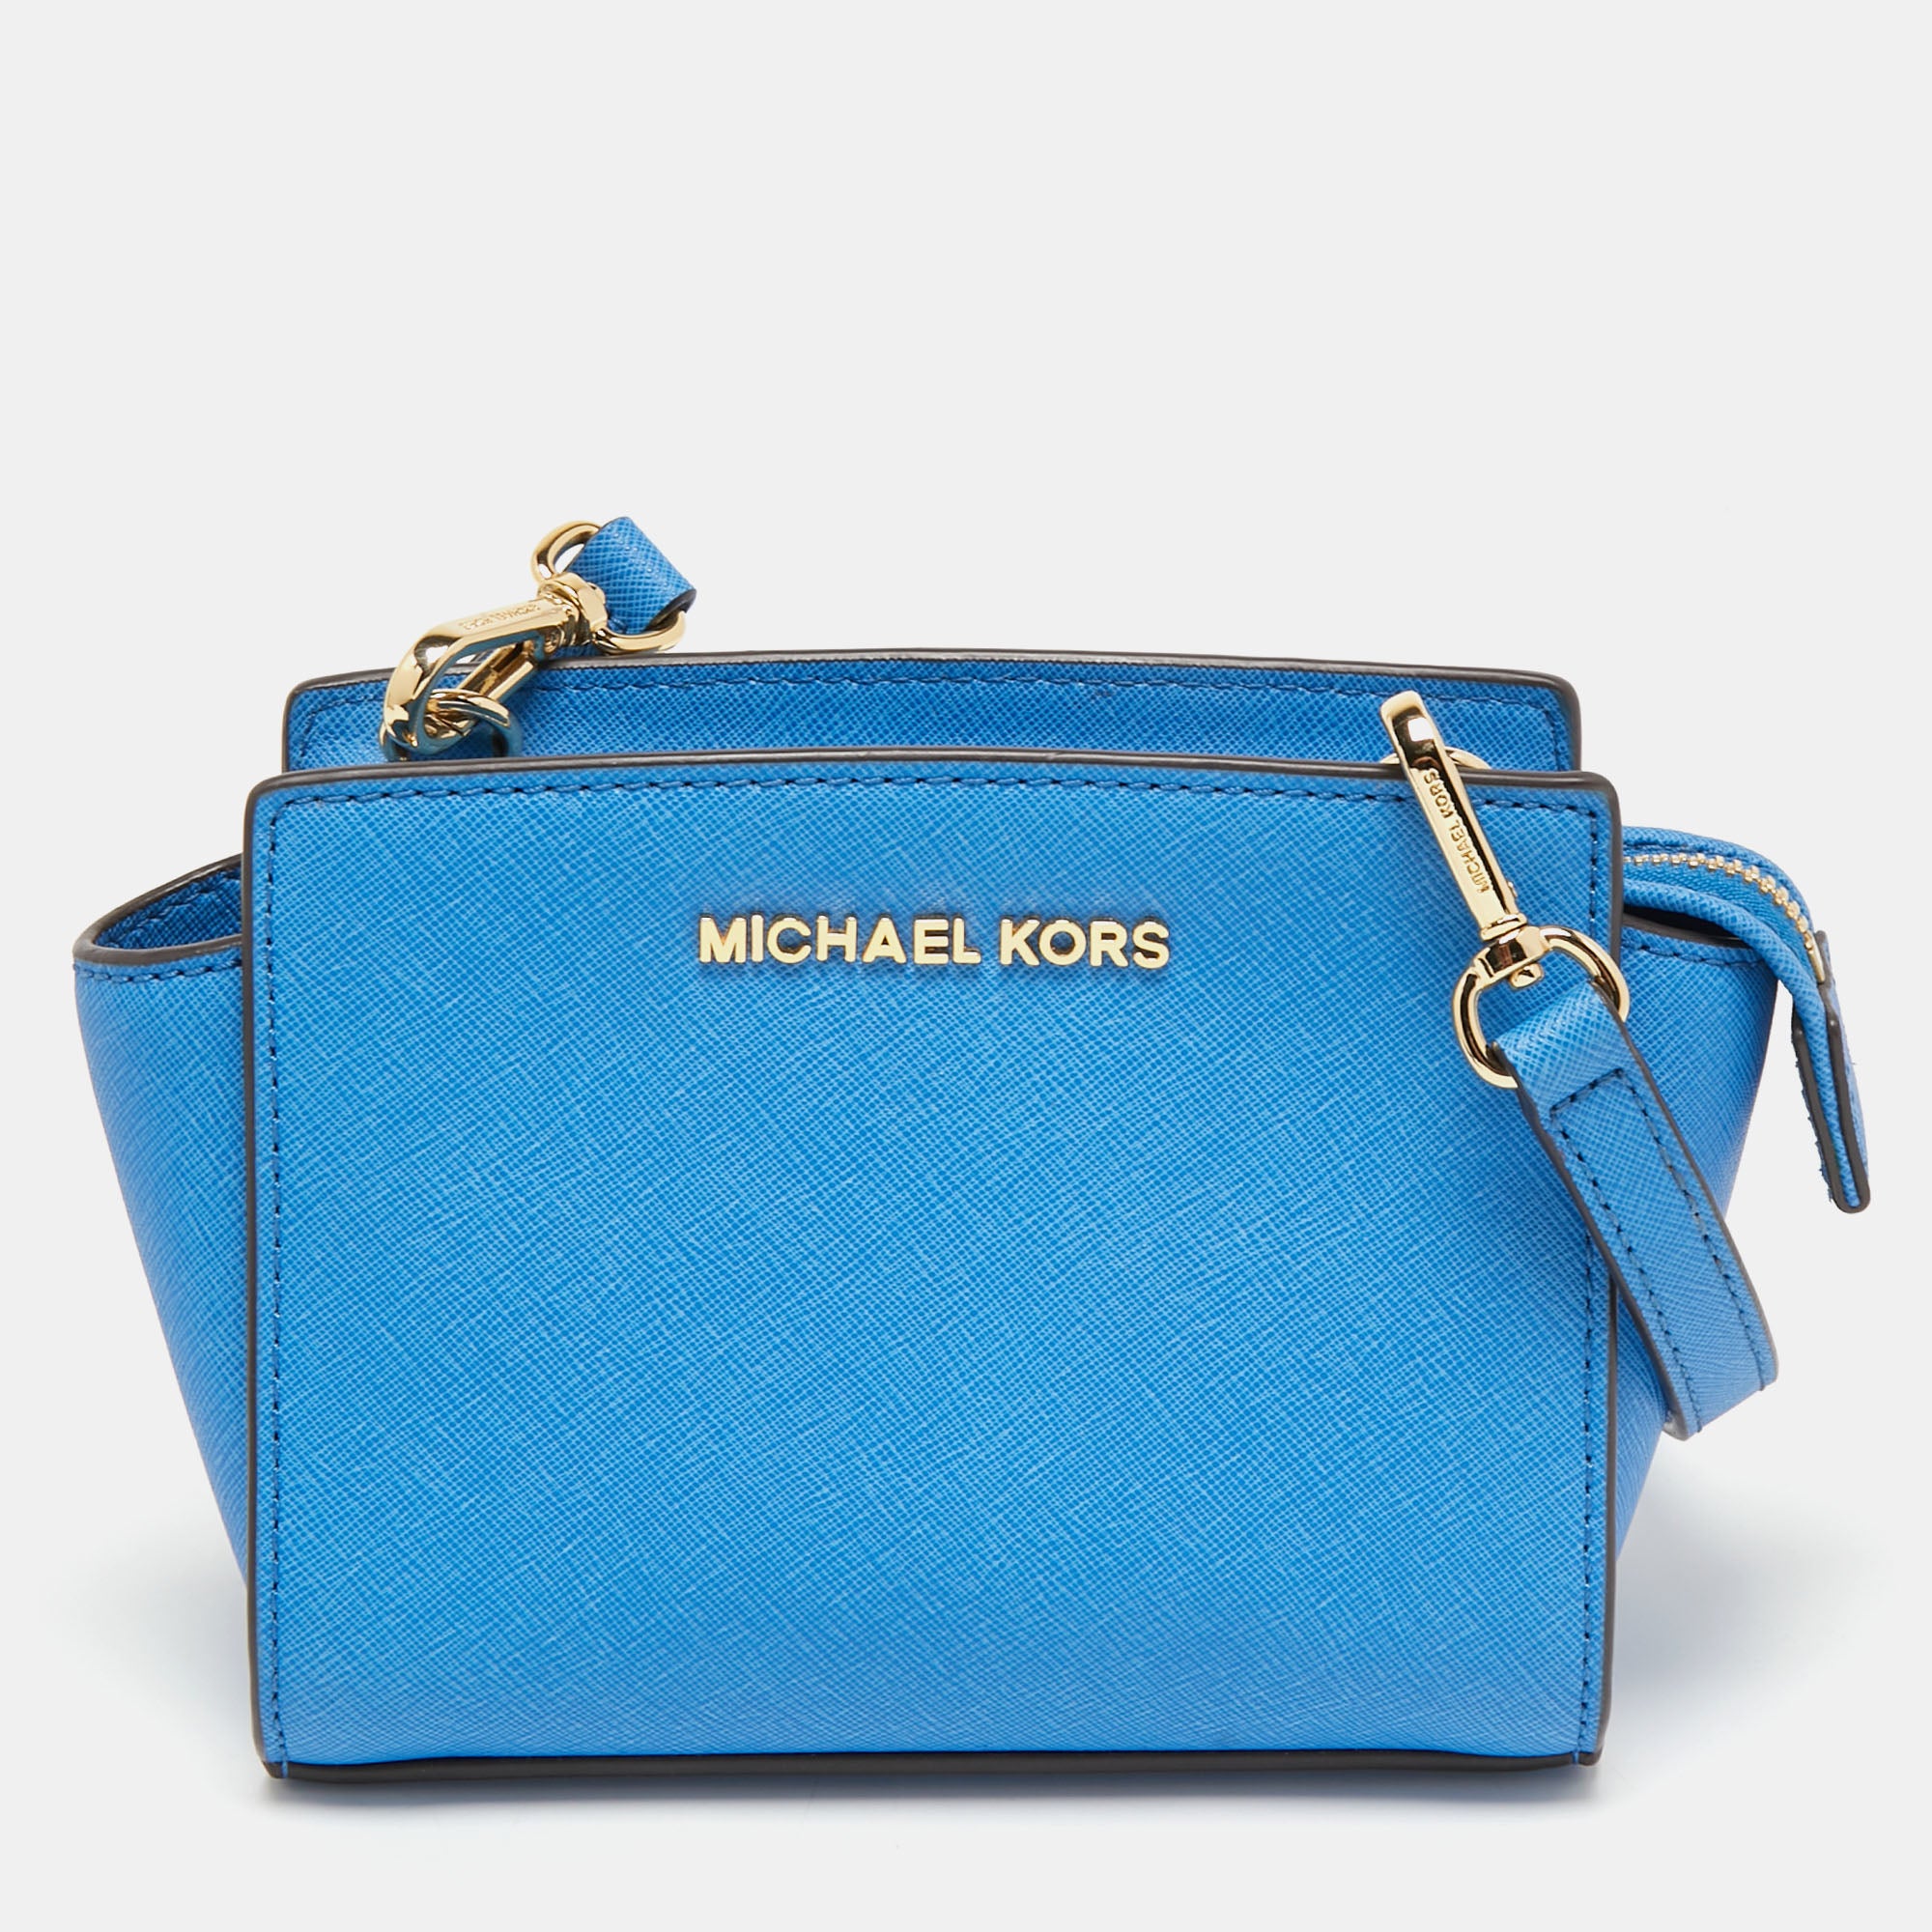 Michael Kors | Bags | Michael Kors Shoulder Bag In Light Blue | Poshmark